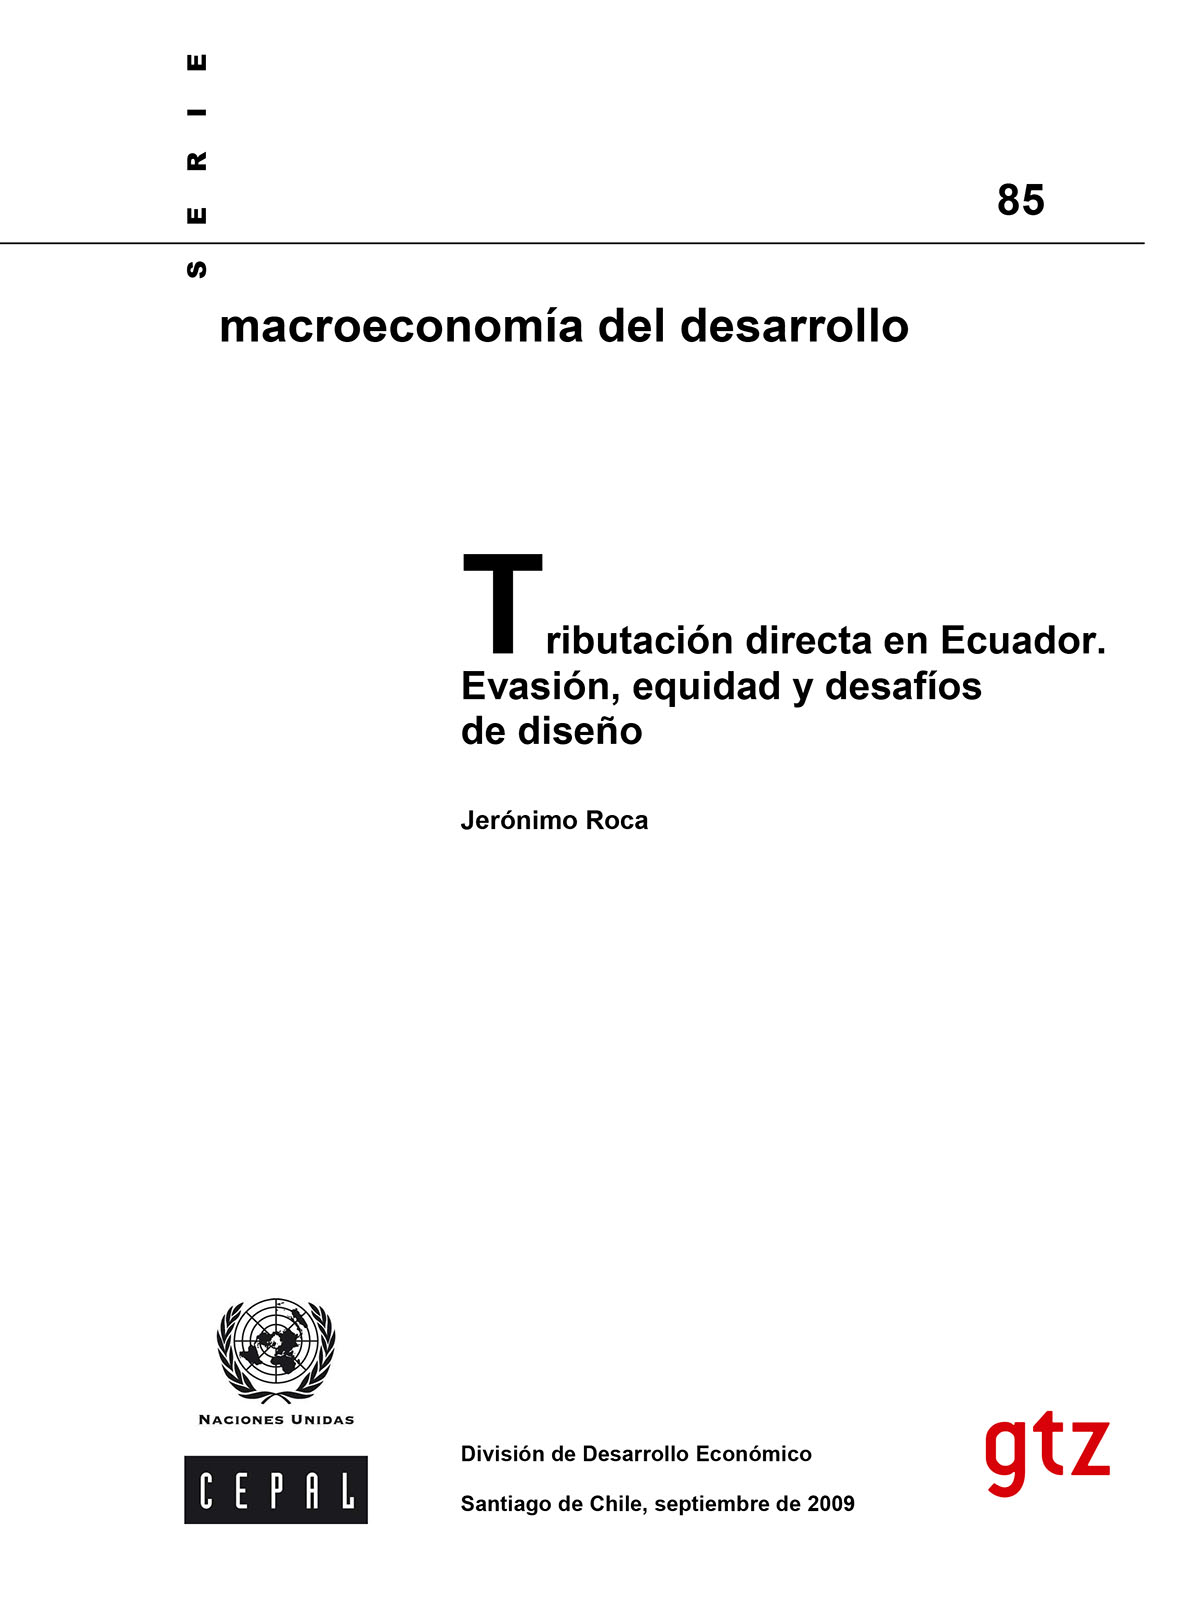 Tributación directa en Ecuador. Evasión, equidad y desafíos de diseño